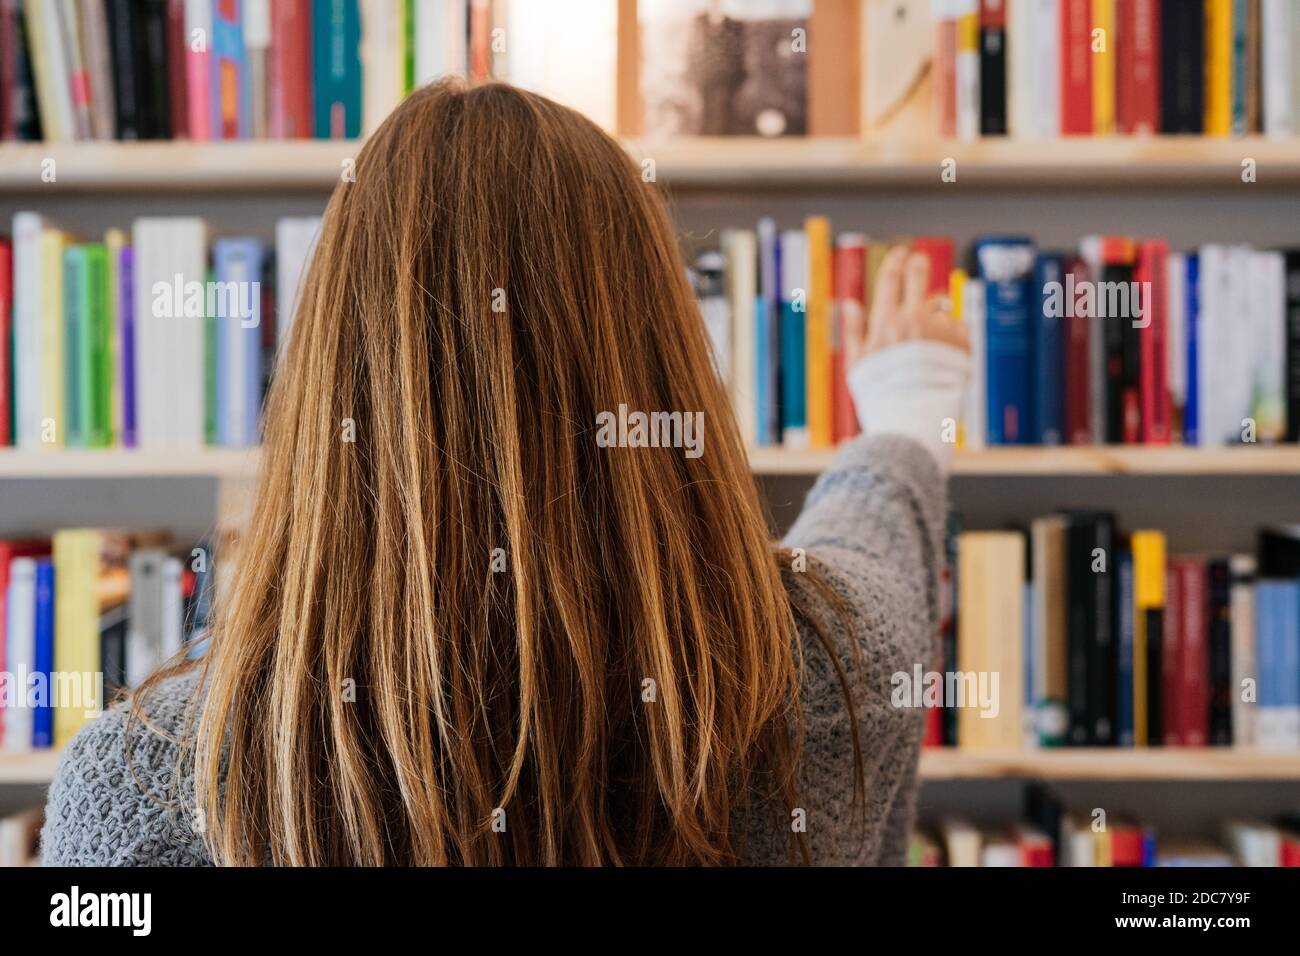 Junge blonde Frau auf ihrem Rücken, die ein Buch aus einem Bücherregal auswählt. Stockfoto